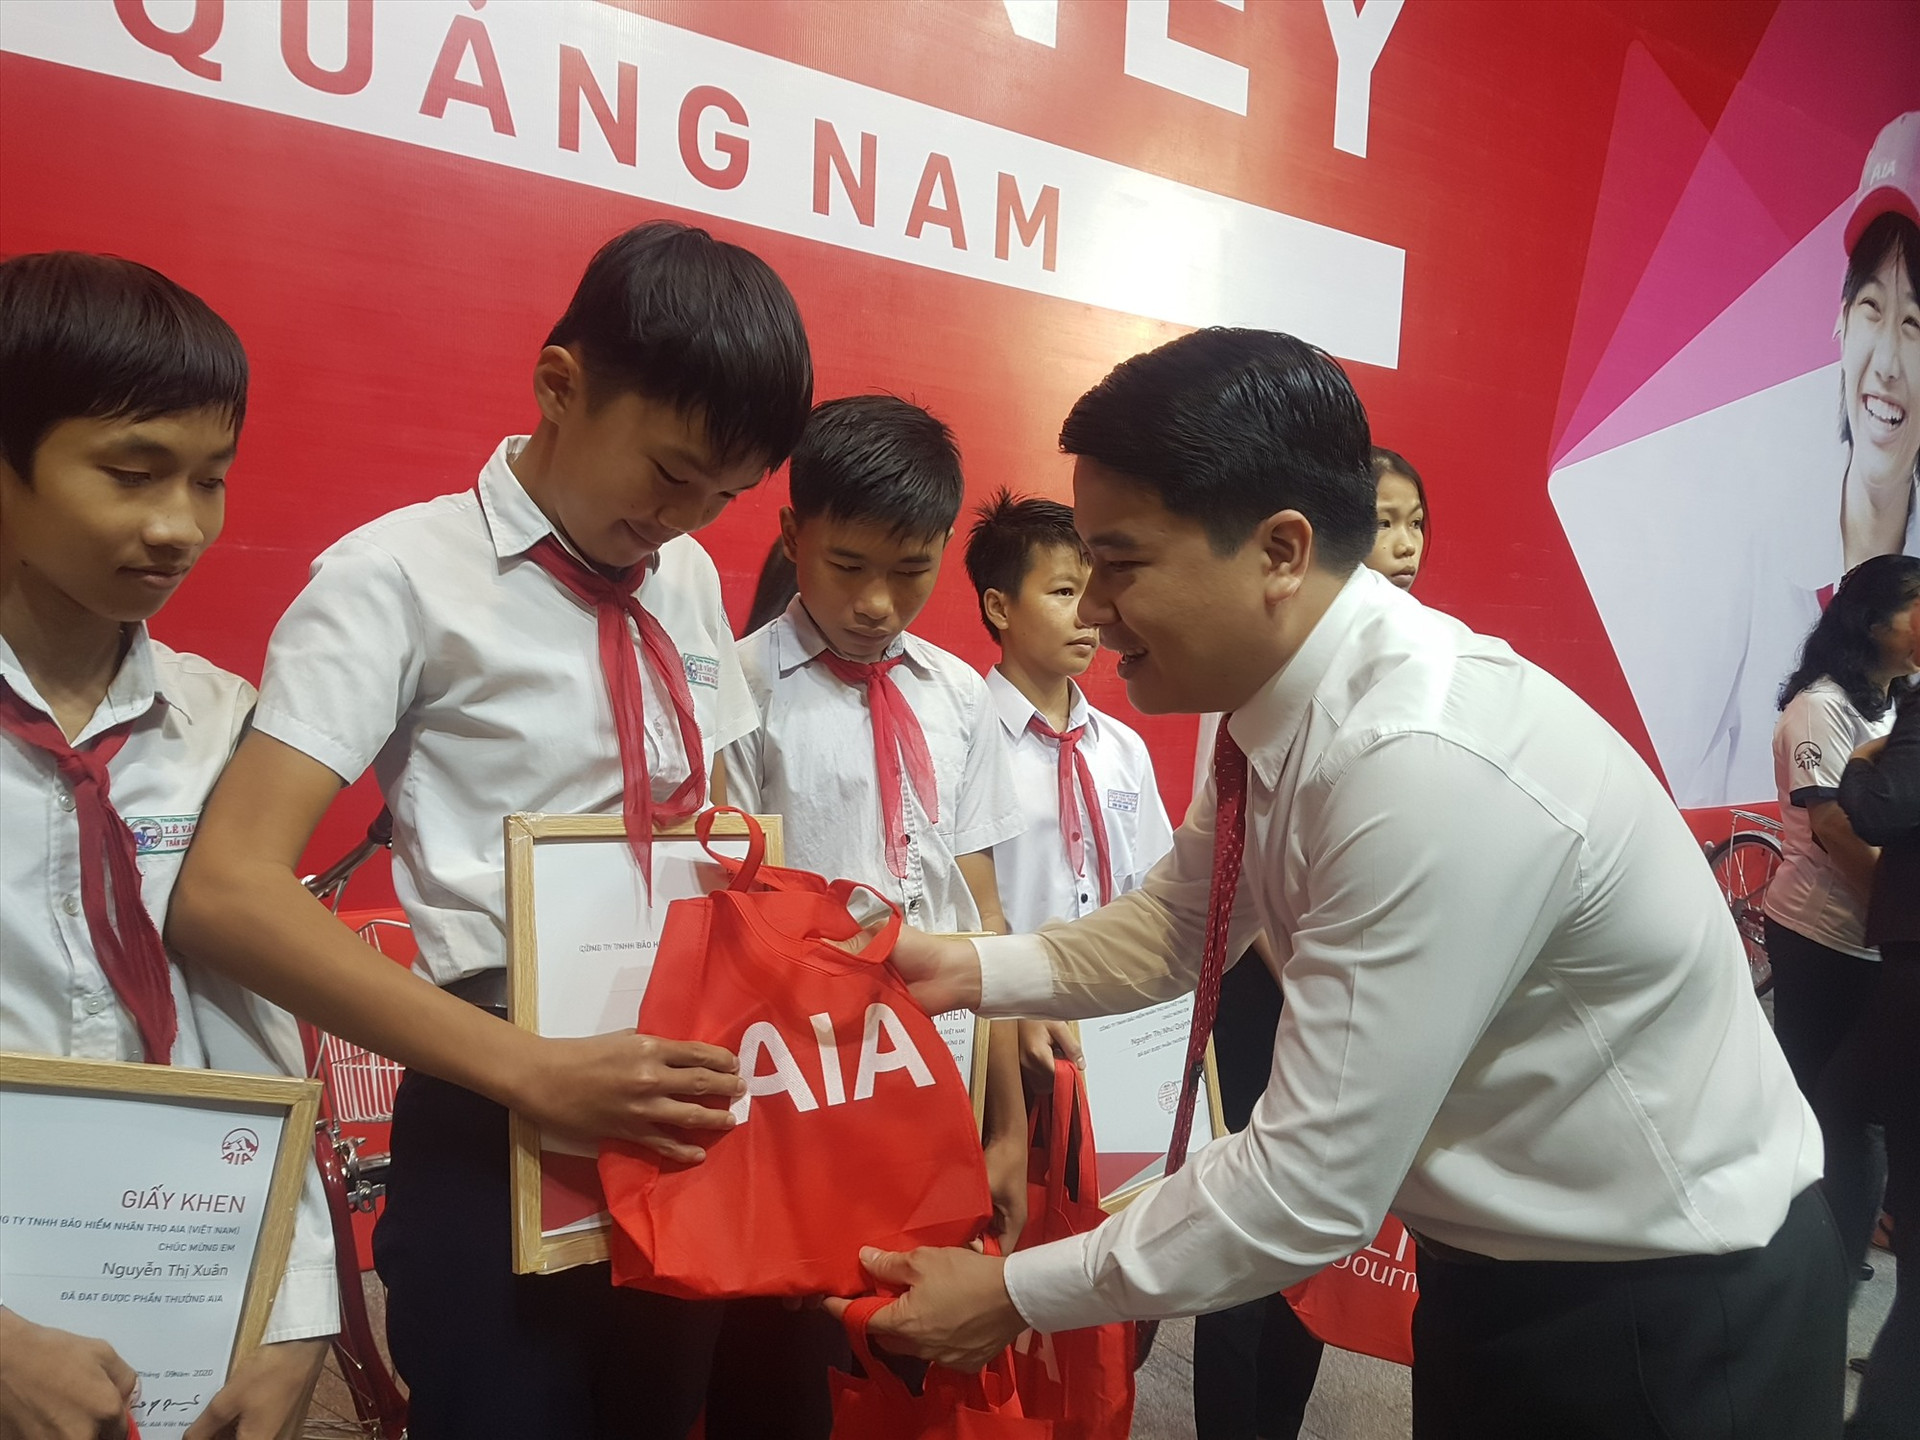 Phó Chủ tịch UBND tỉnh Trần Văn Tân tặng quà cho học sinh nghèo tại chương trình. Ảnh: D.L